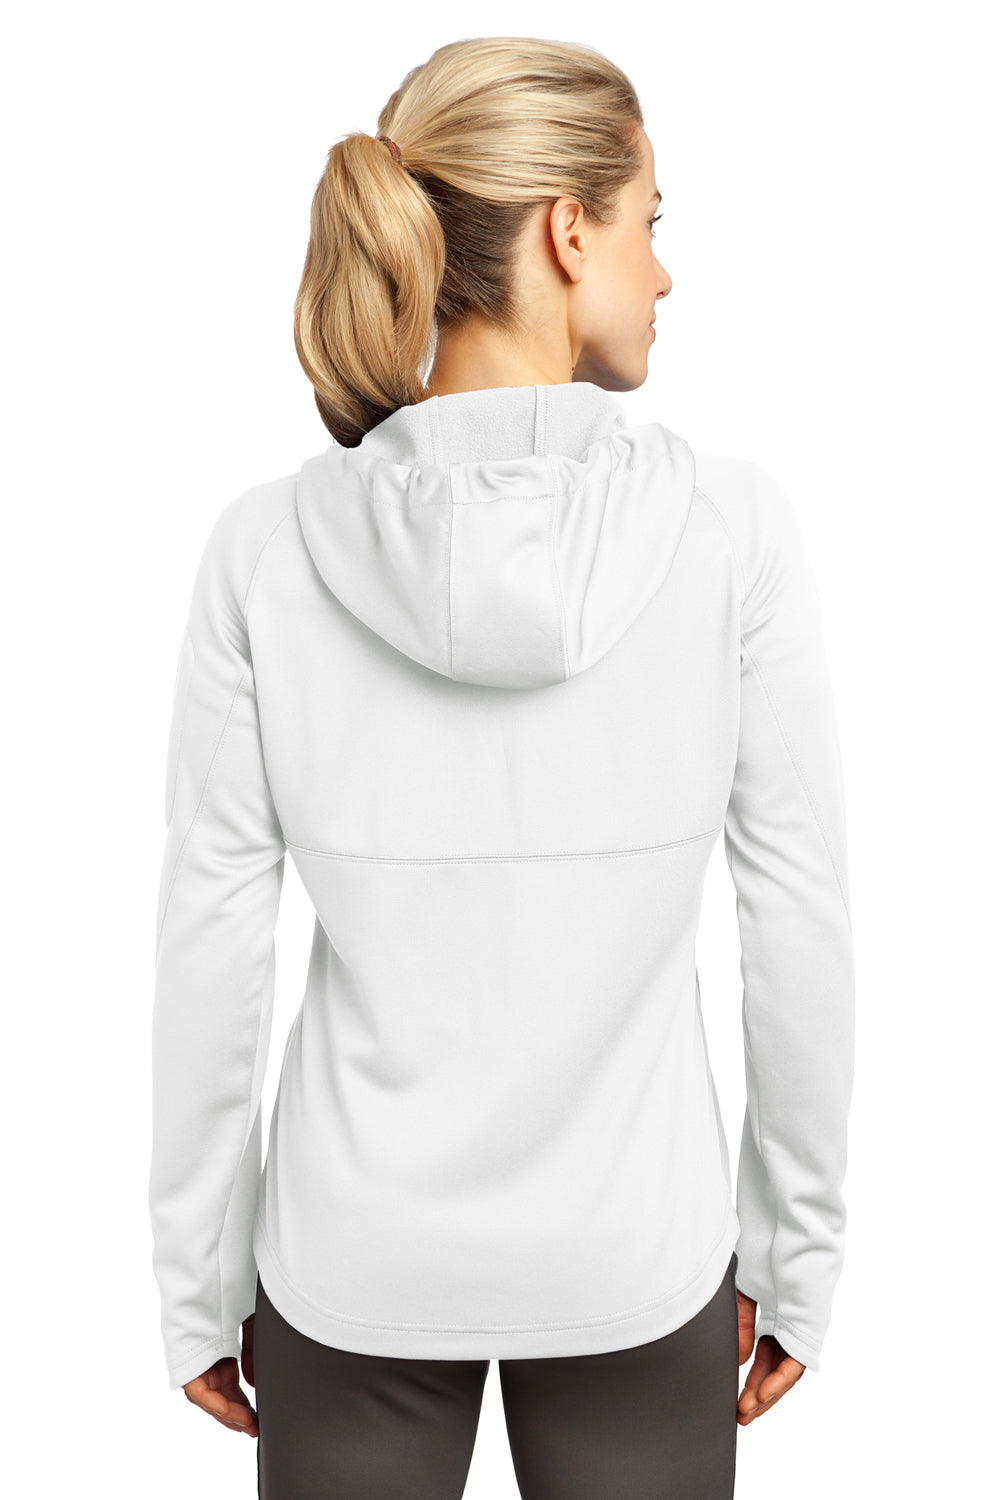 Sport-Tek L248 Womens Tech Moisture Wicking Fleece Full Zip Hooded Sweatshirt Hoodie White Back